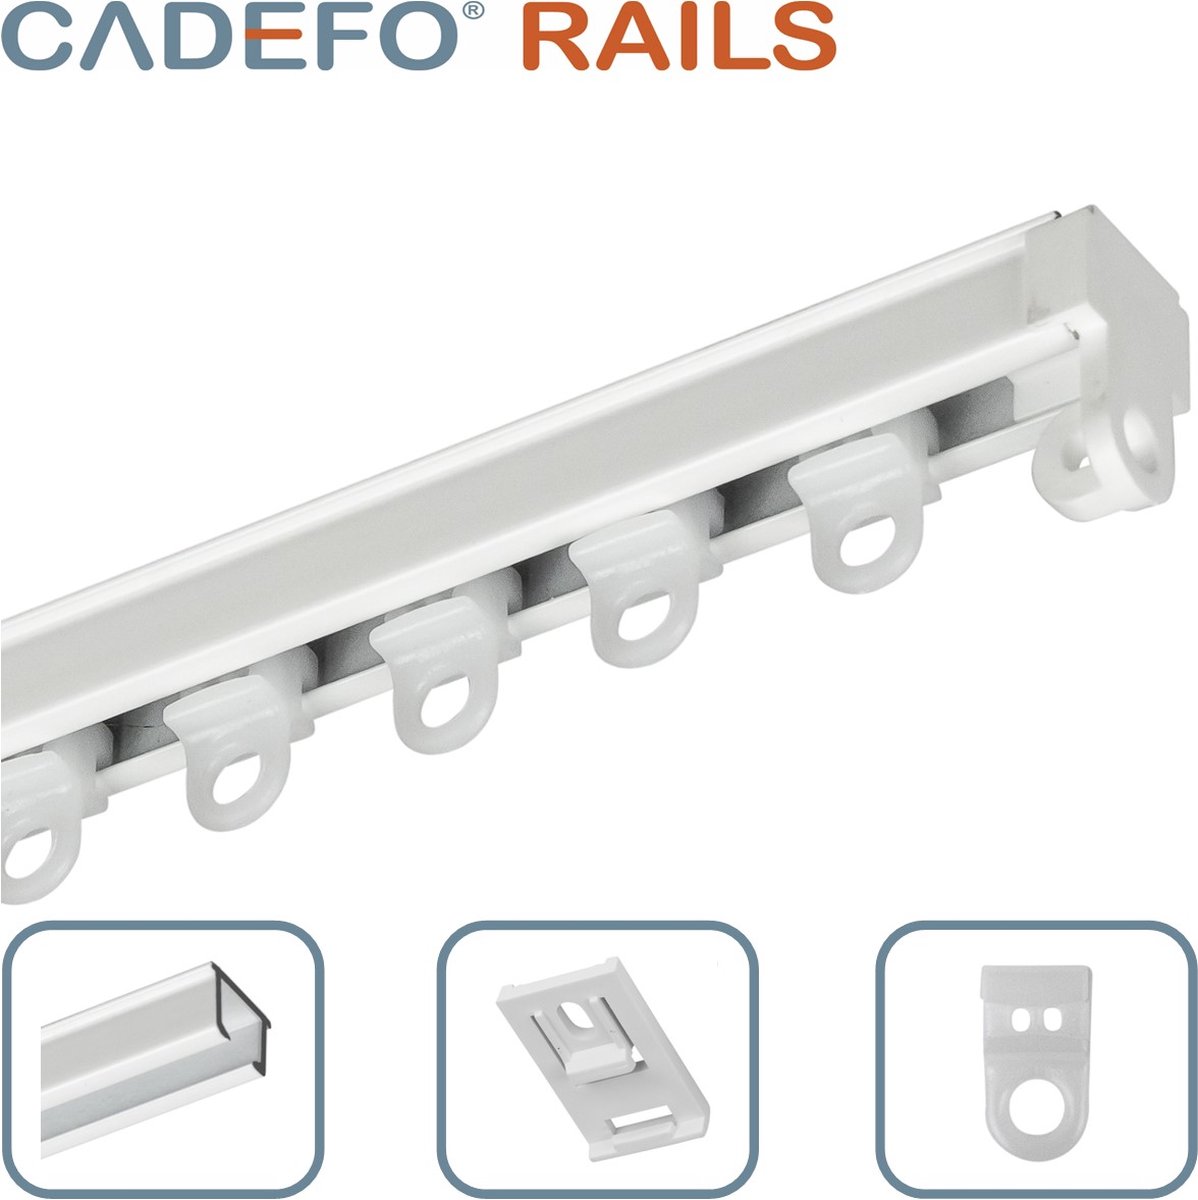 CADEFO RAILS (451 - 500 cm) Gordijnrails - Compleet op maat! - UIT 1 STUK - Leverbaar tot 6 meter - Plafondbevestiging - Lengte 478 cm